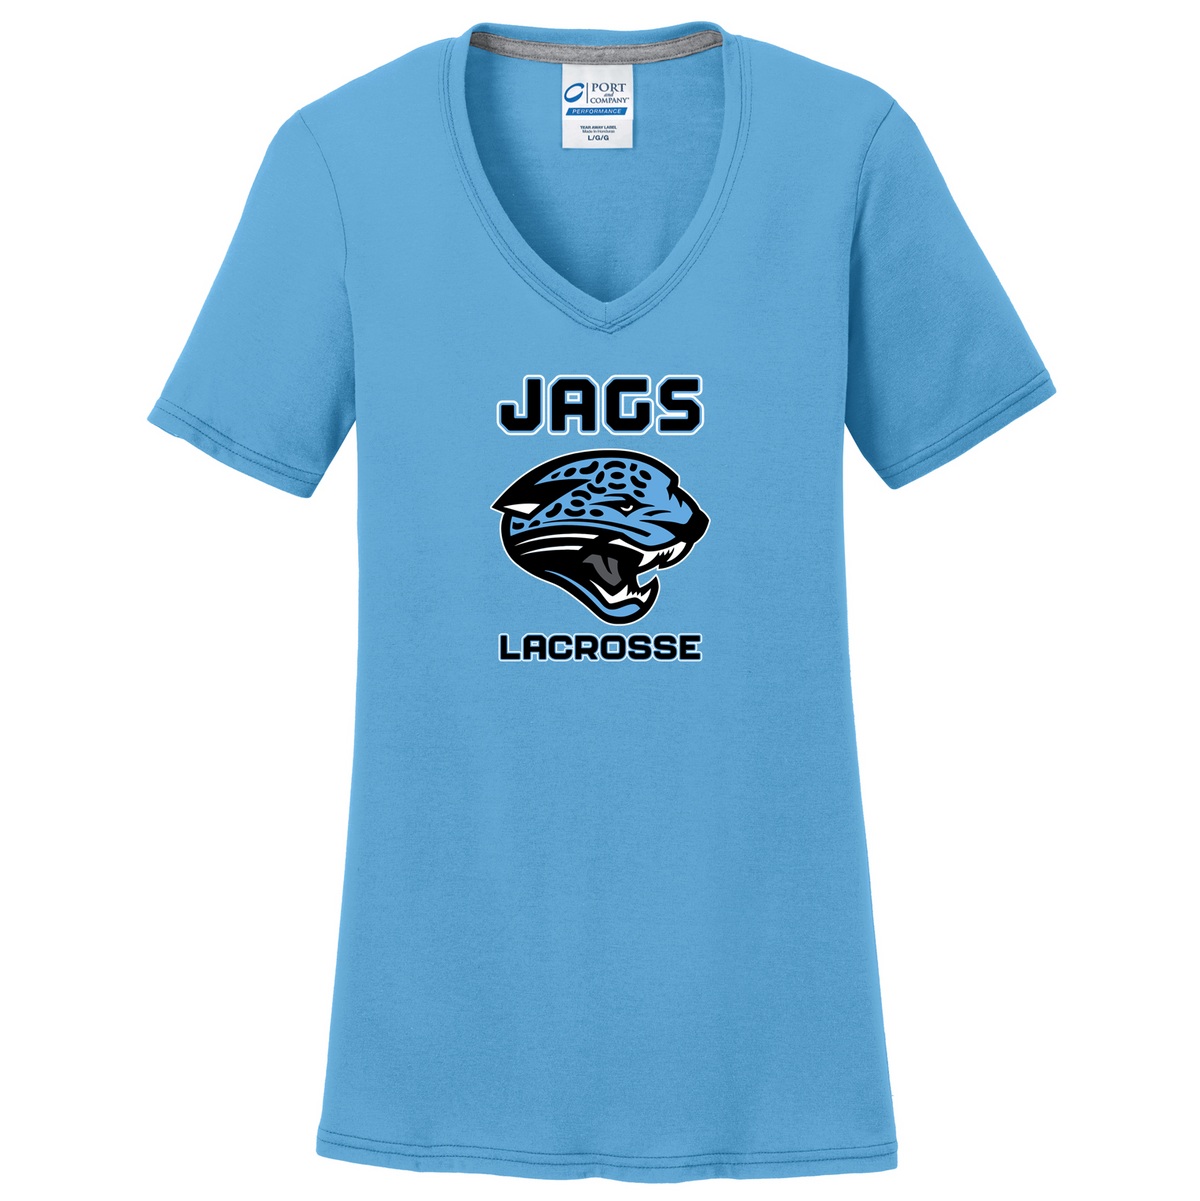 Jags Lacrosse Women's T-Shirt